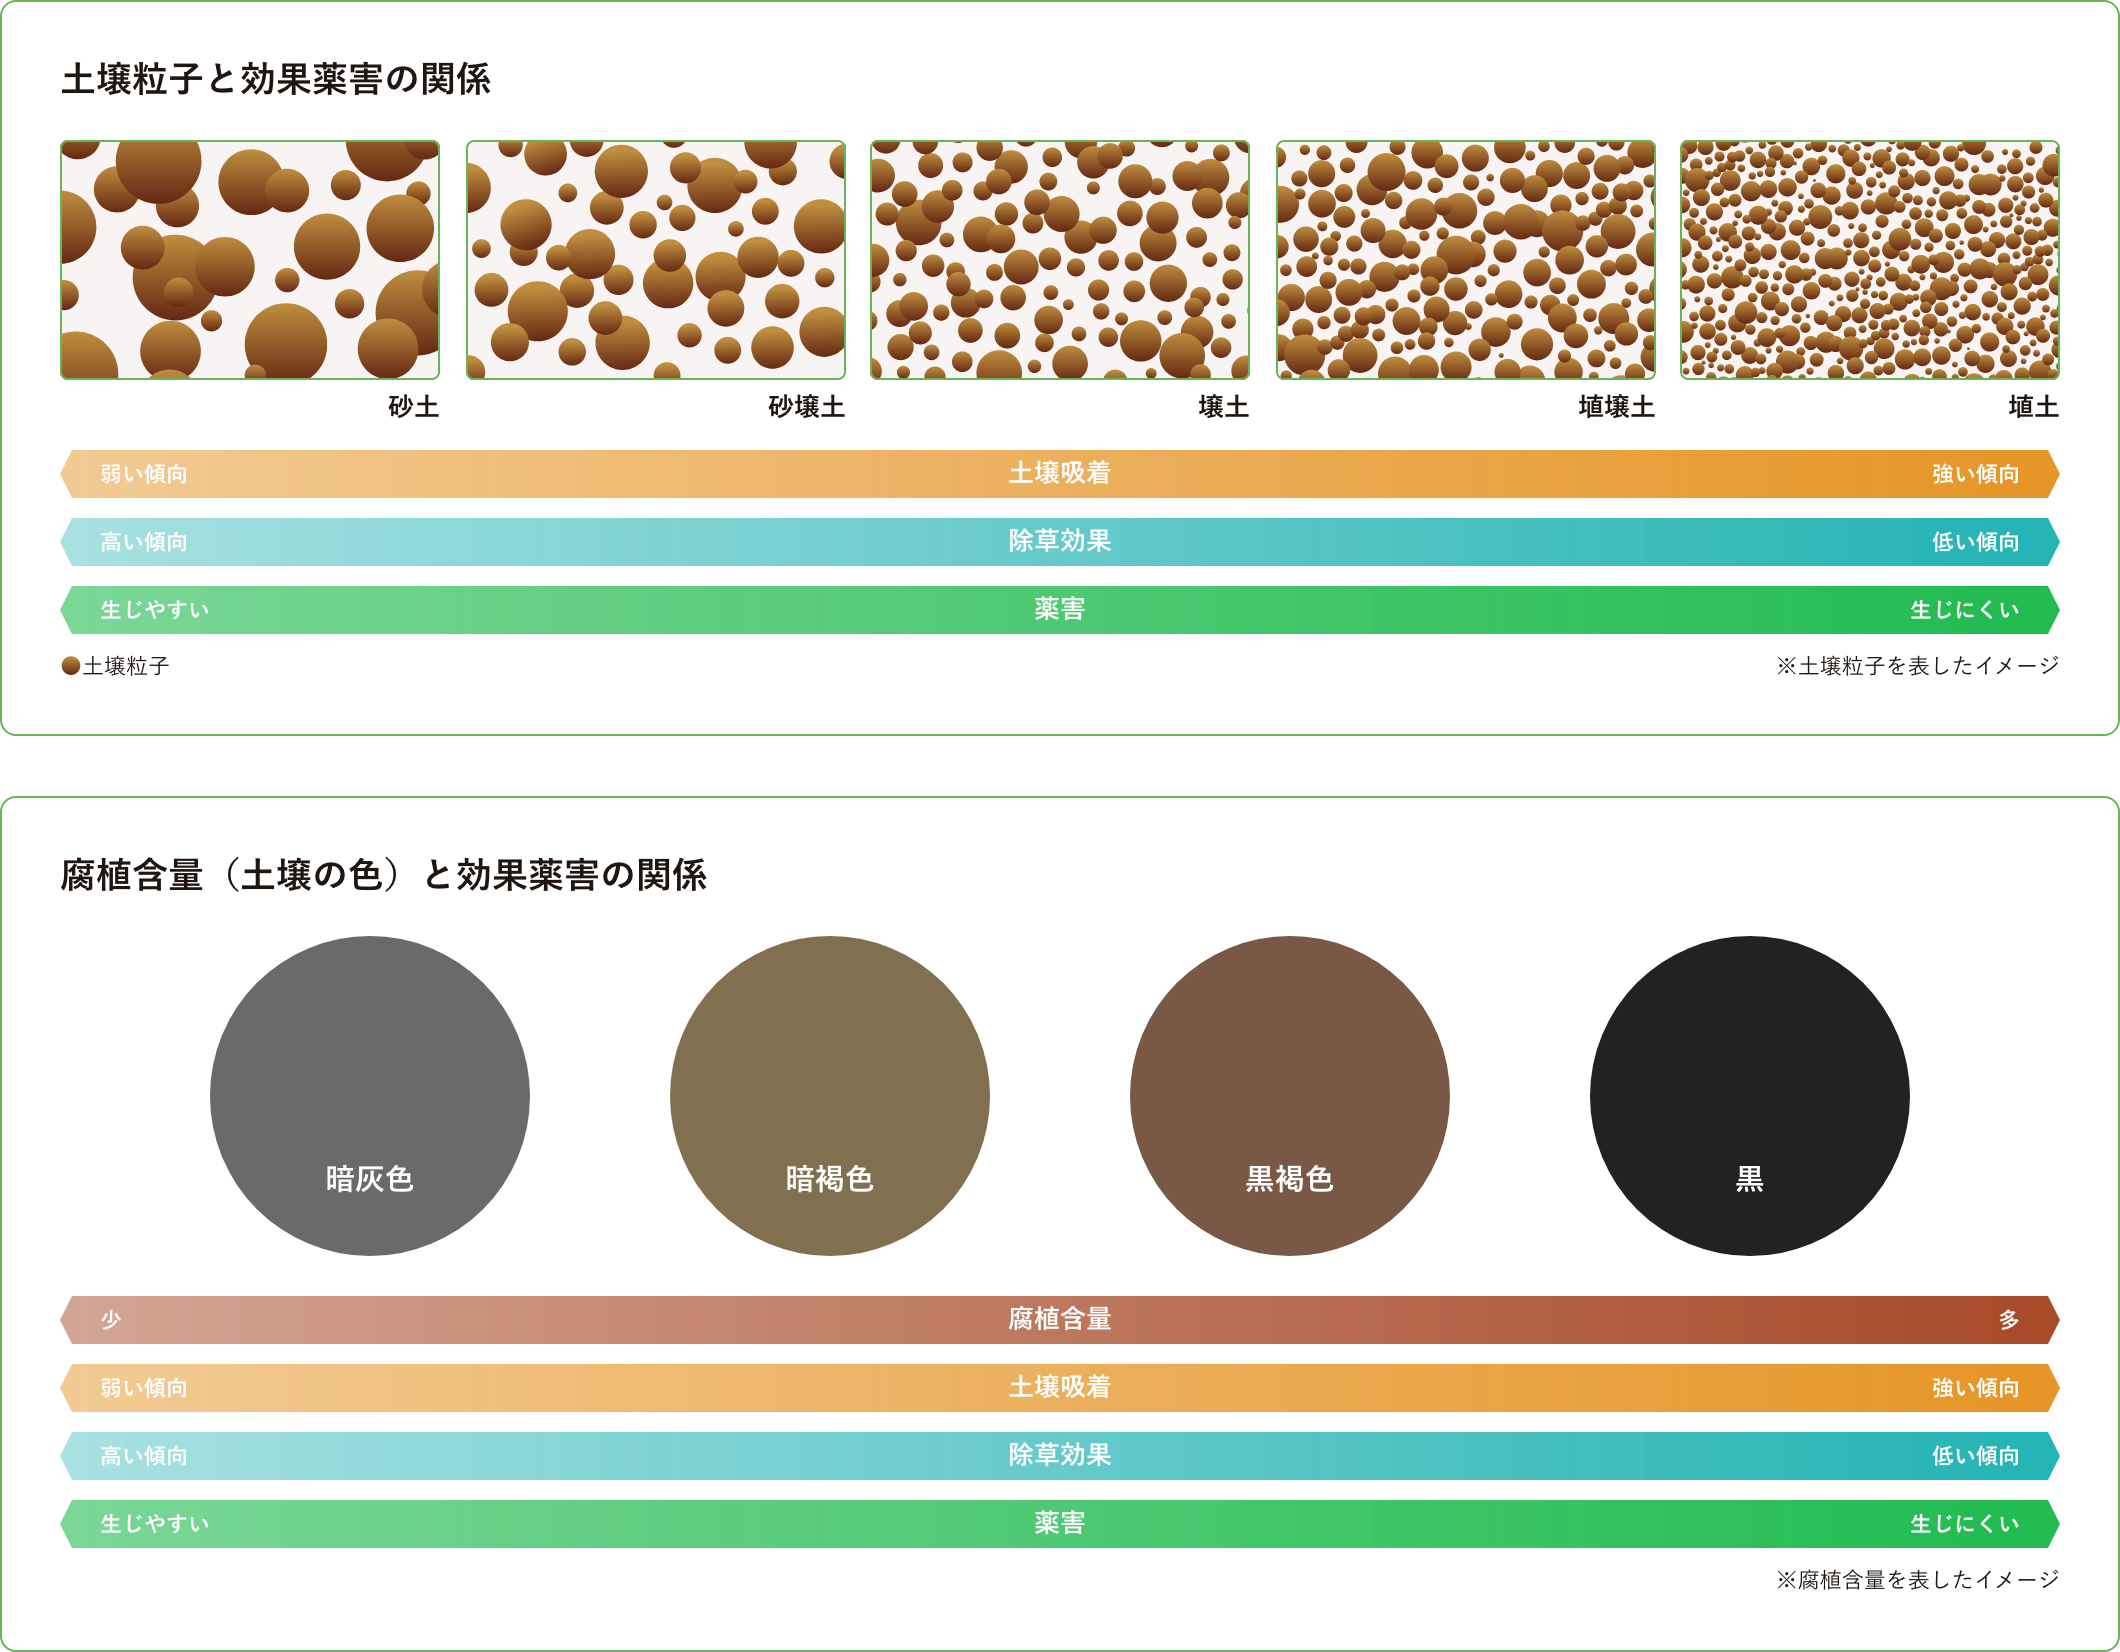 土壌粒子と効果薬害の関係、腐植含量（土壌の色）と効果薬害の関係イメージ